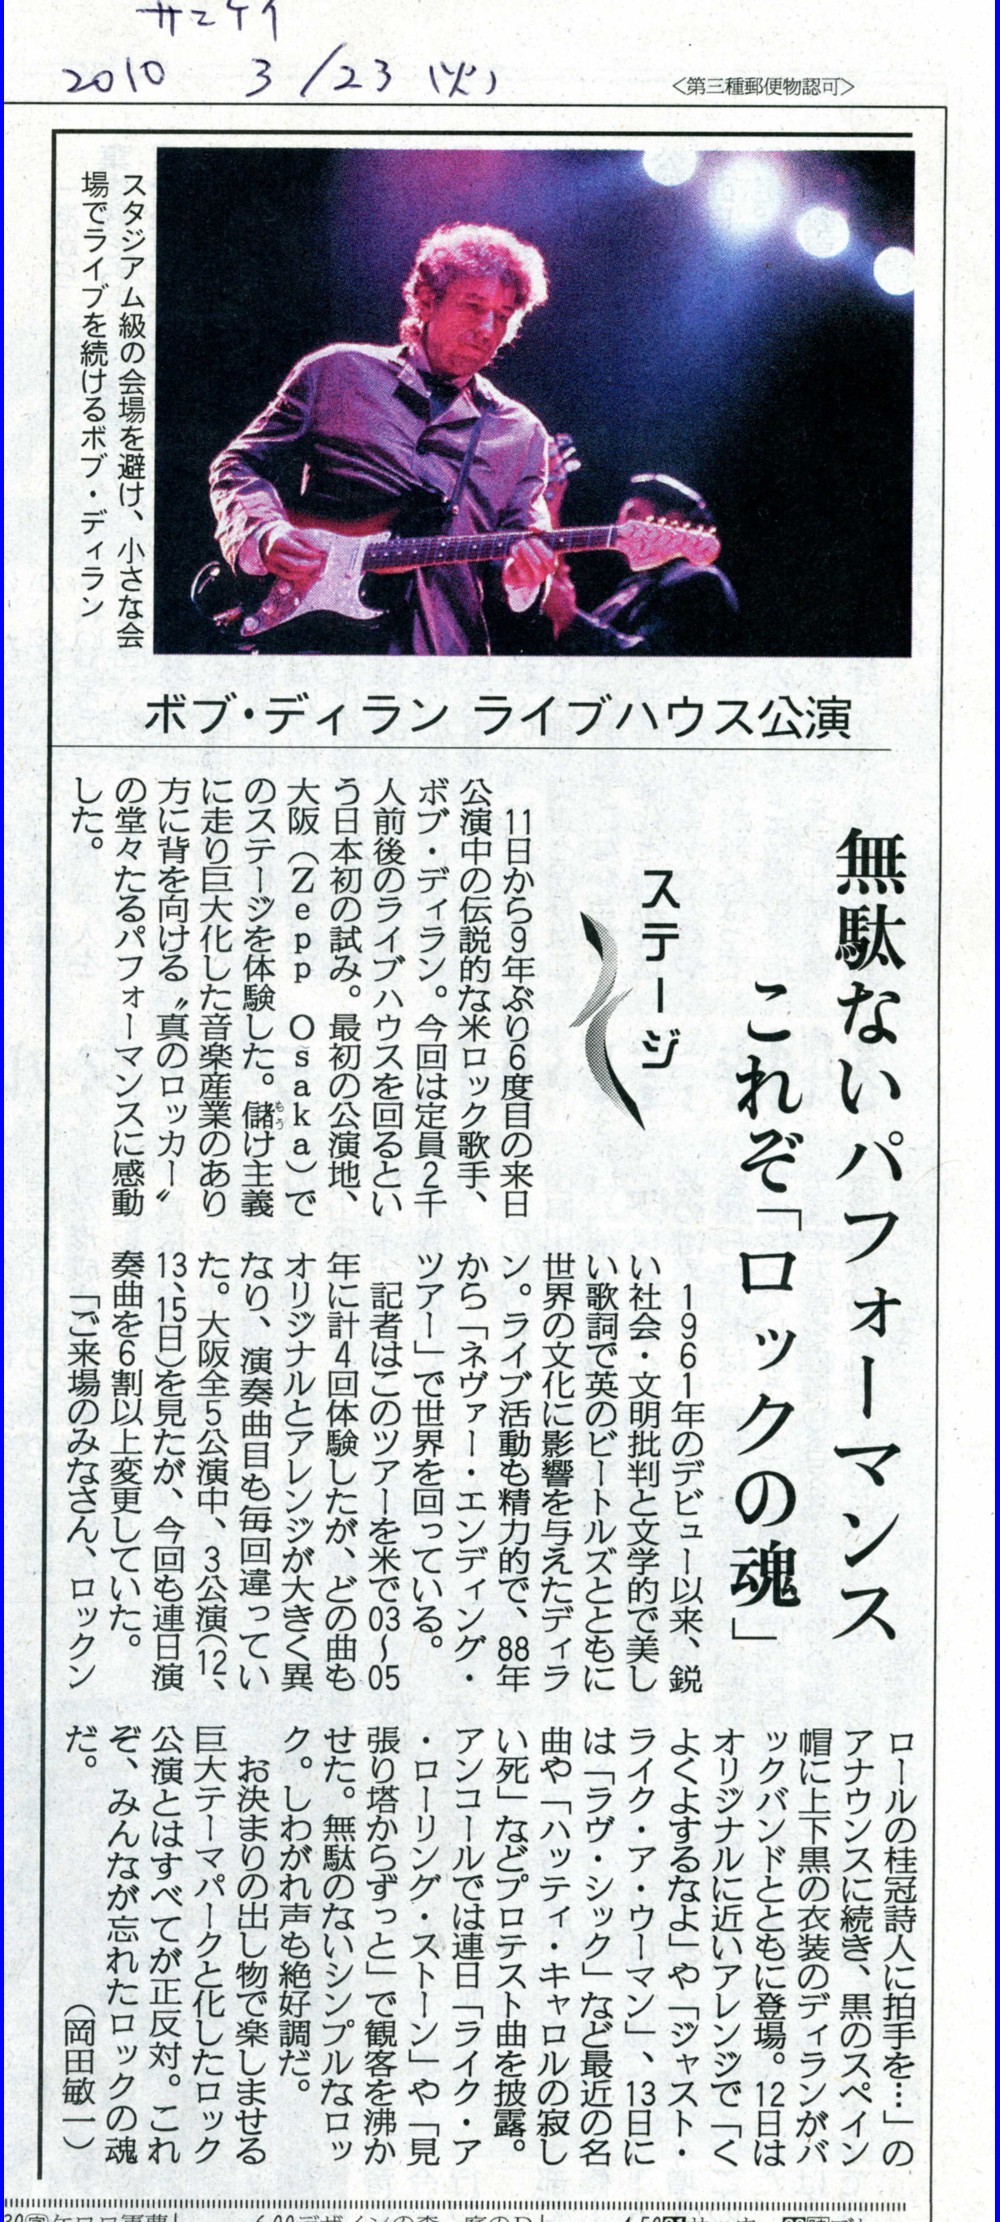 2010-3-23 産経新聞